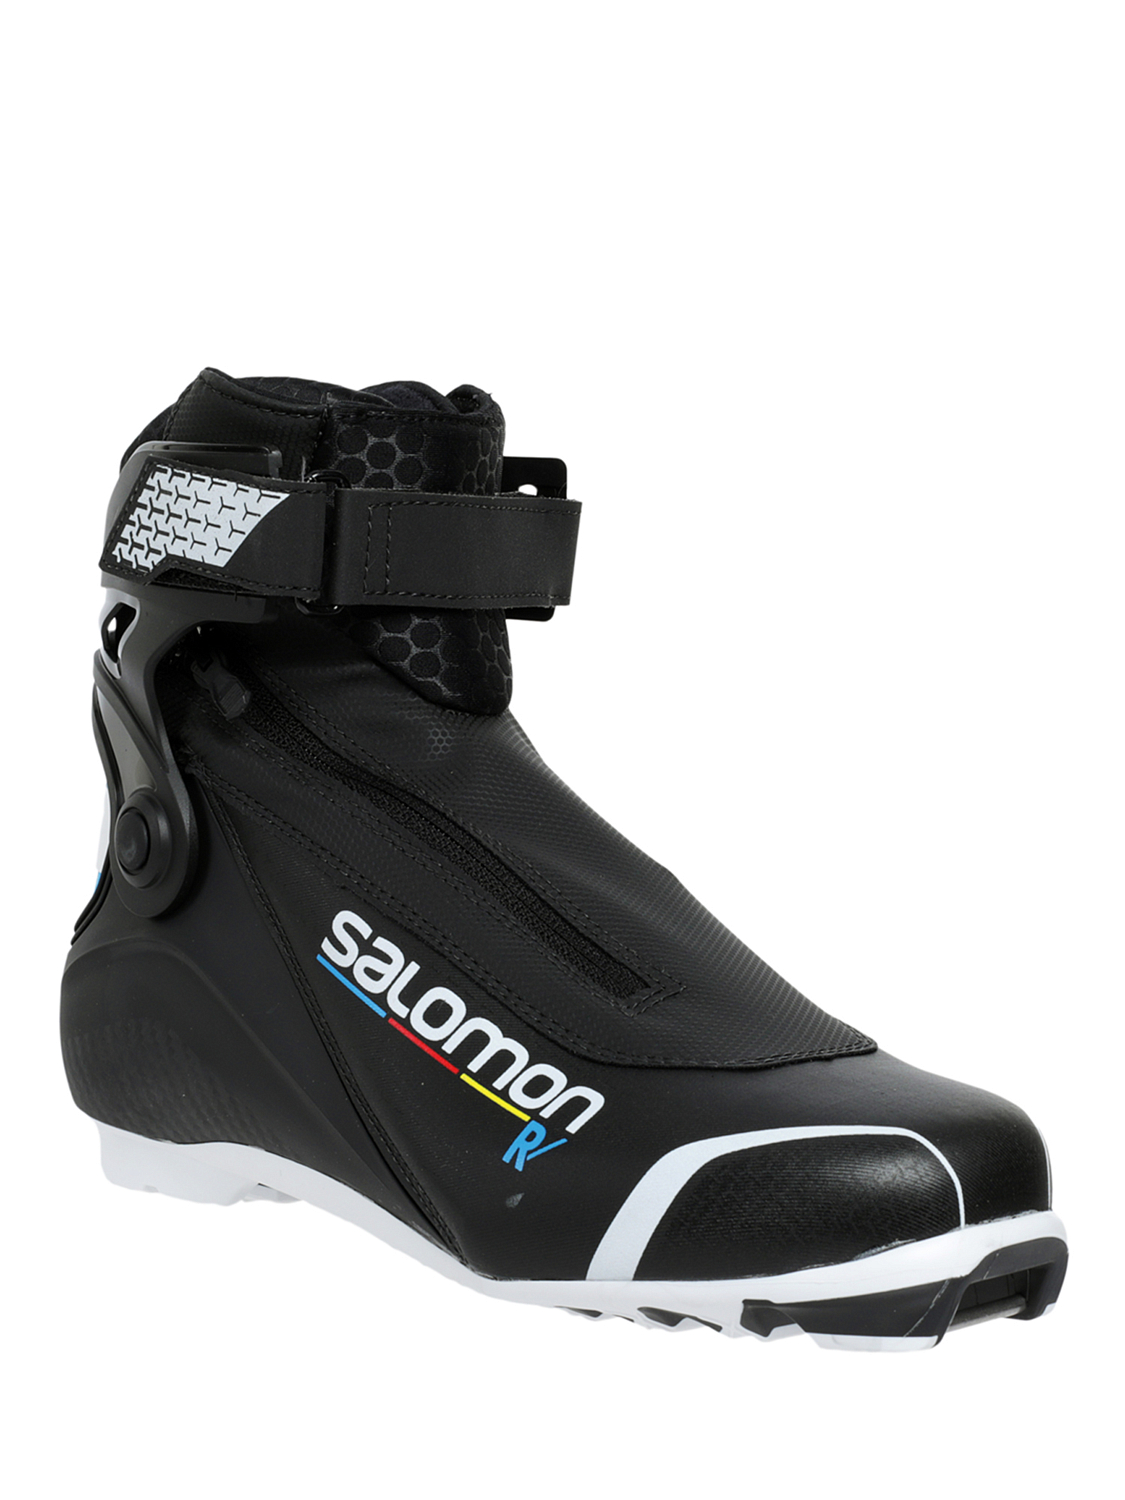 Лыжные ботинки SALOMON R Prolink Black